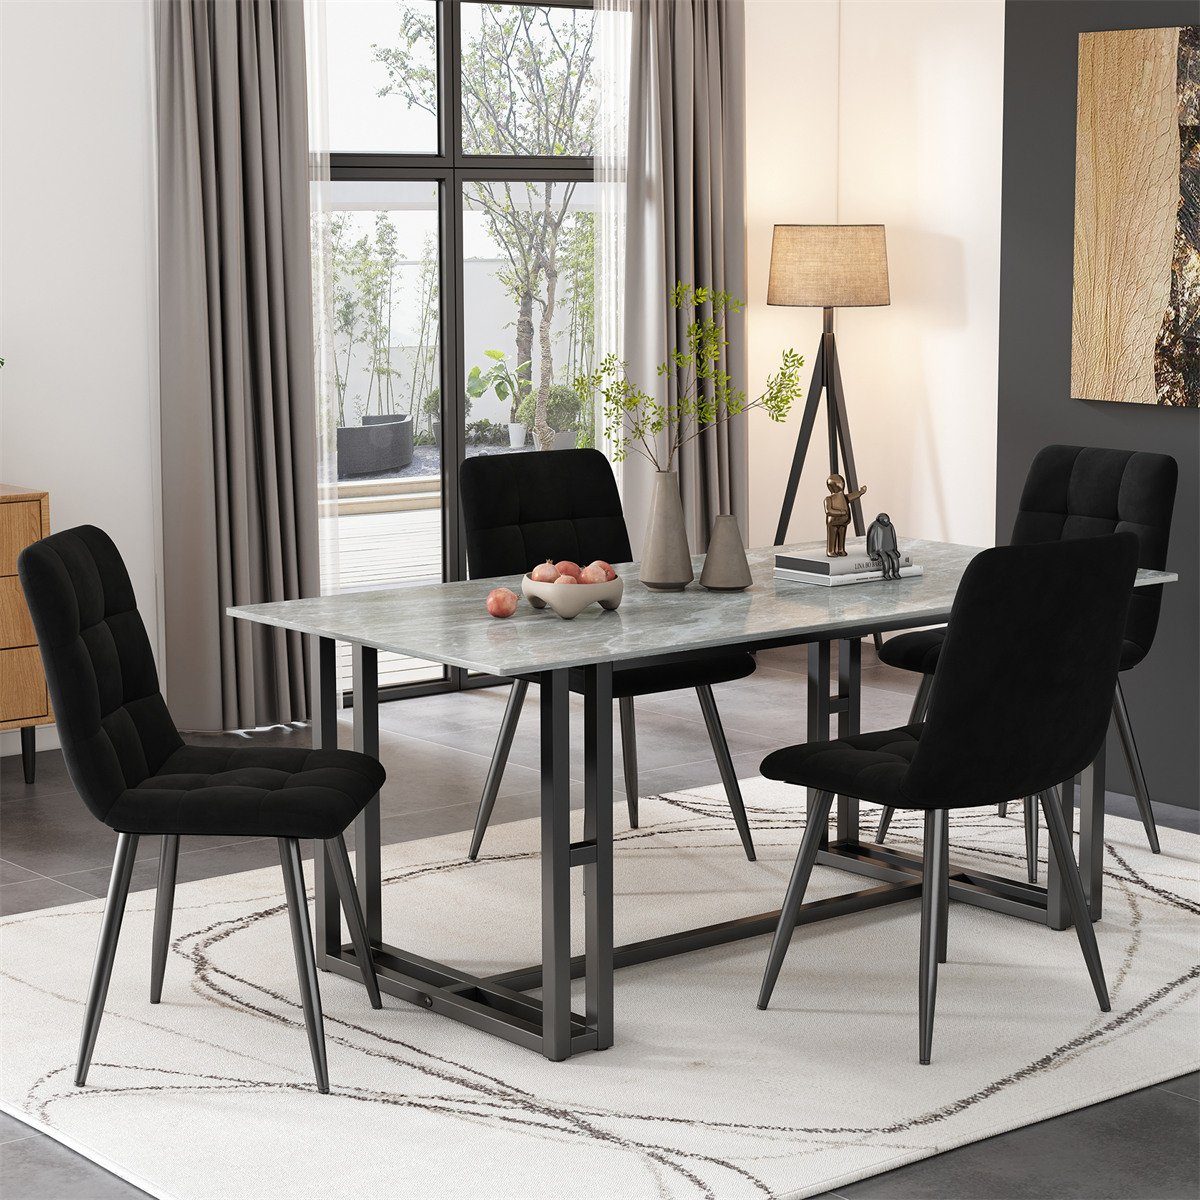 XDeer Esszimmerstuhl 4er Set Esszimmerstühle,Polsterstuhl aus montieren zu Metall,Leicht Sitzfläche Samt mit aus Rückenlehne, Schwarz Gestell Küchenstuhl